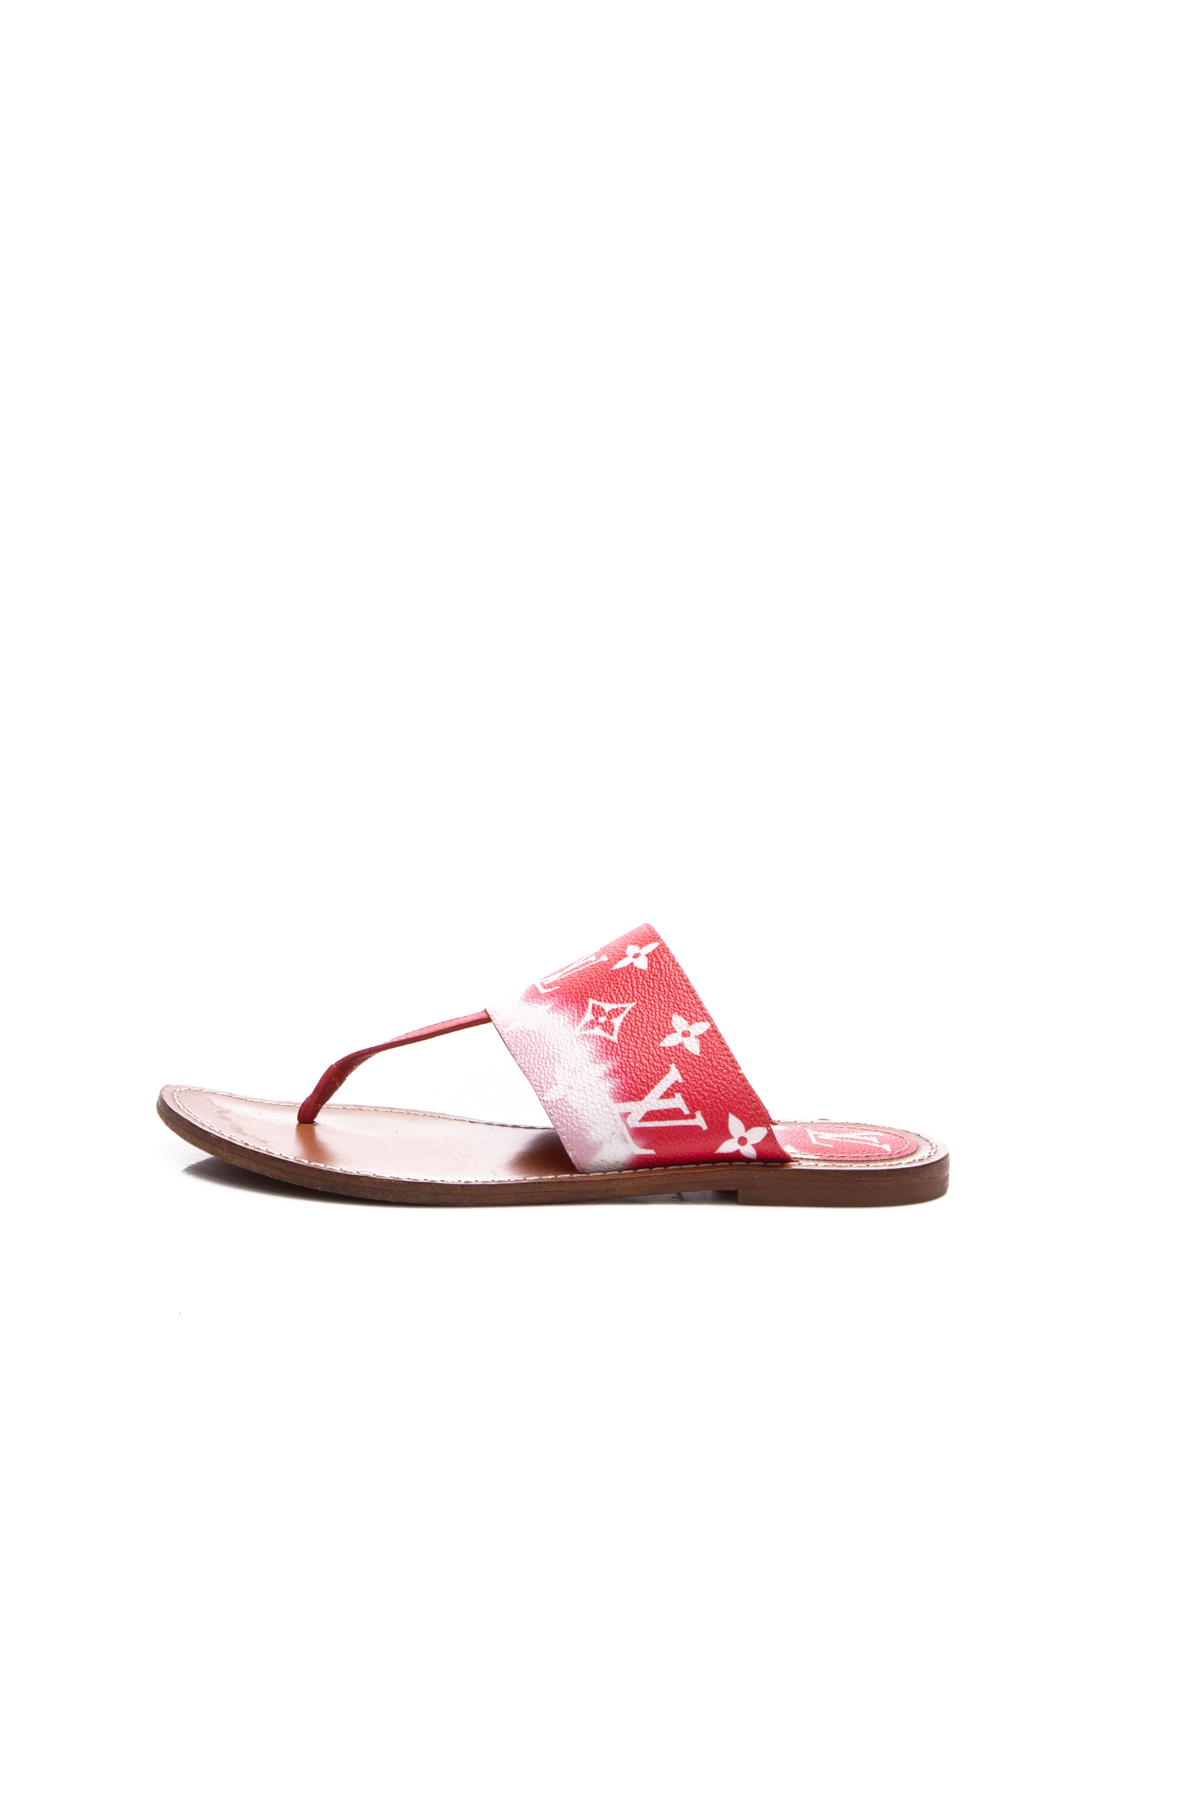 Louis Vuitton, Shoes, Louis Vuitton Lv Sandals Escale Palma Red Pink  Sandal